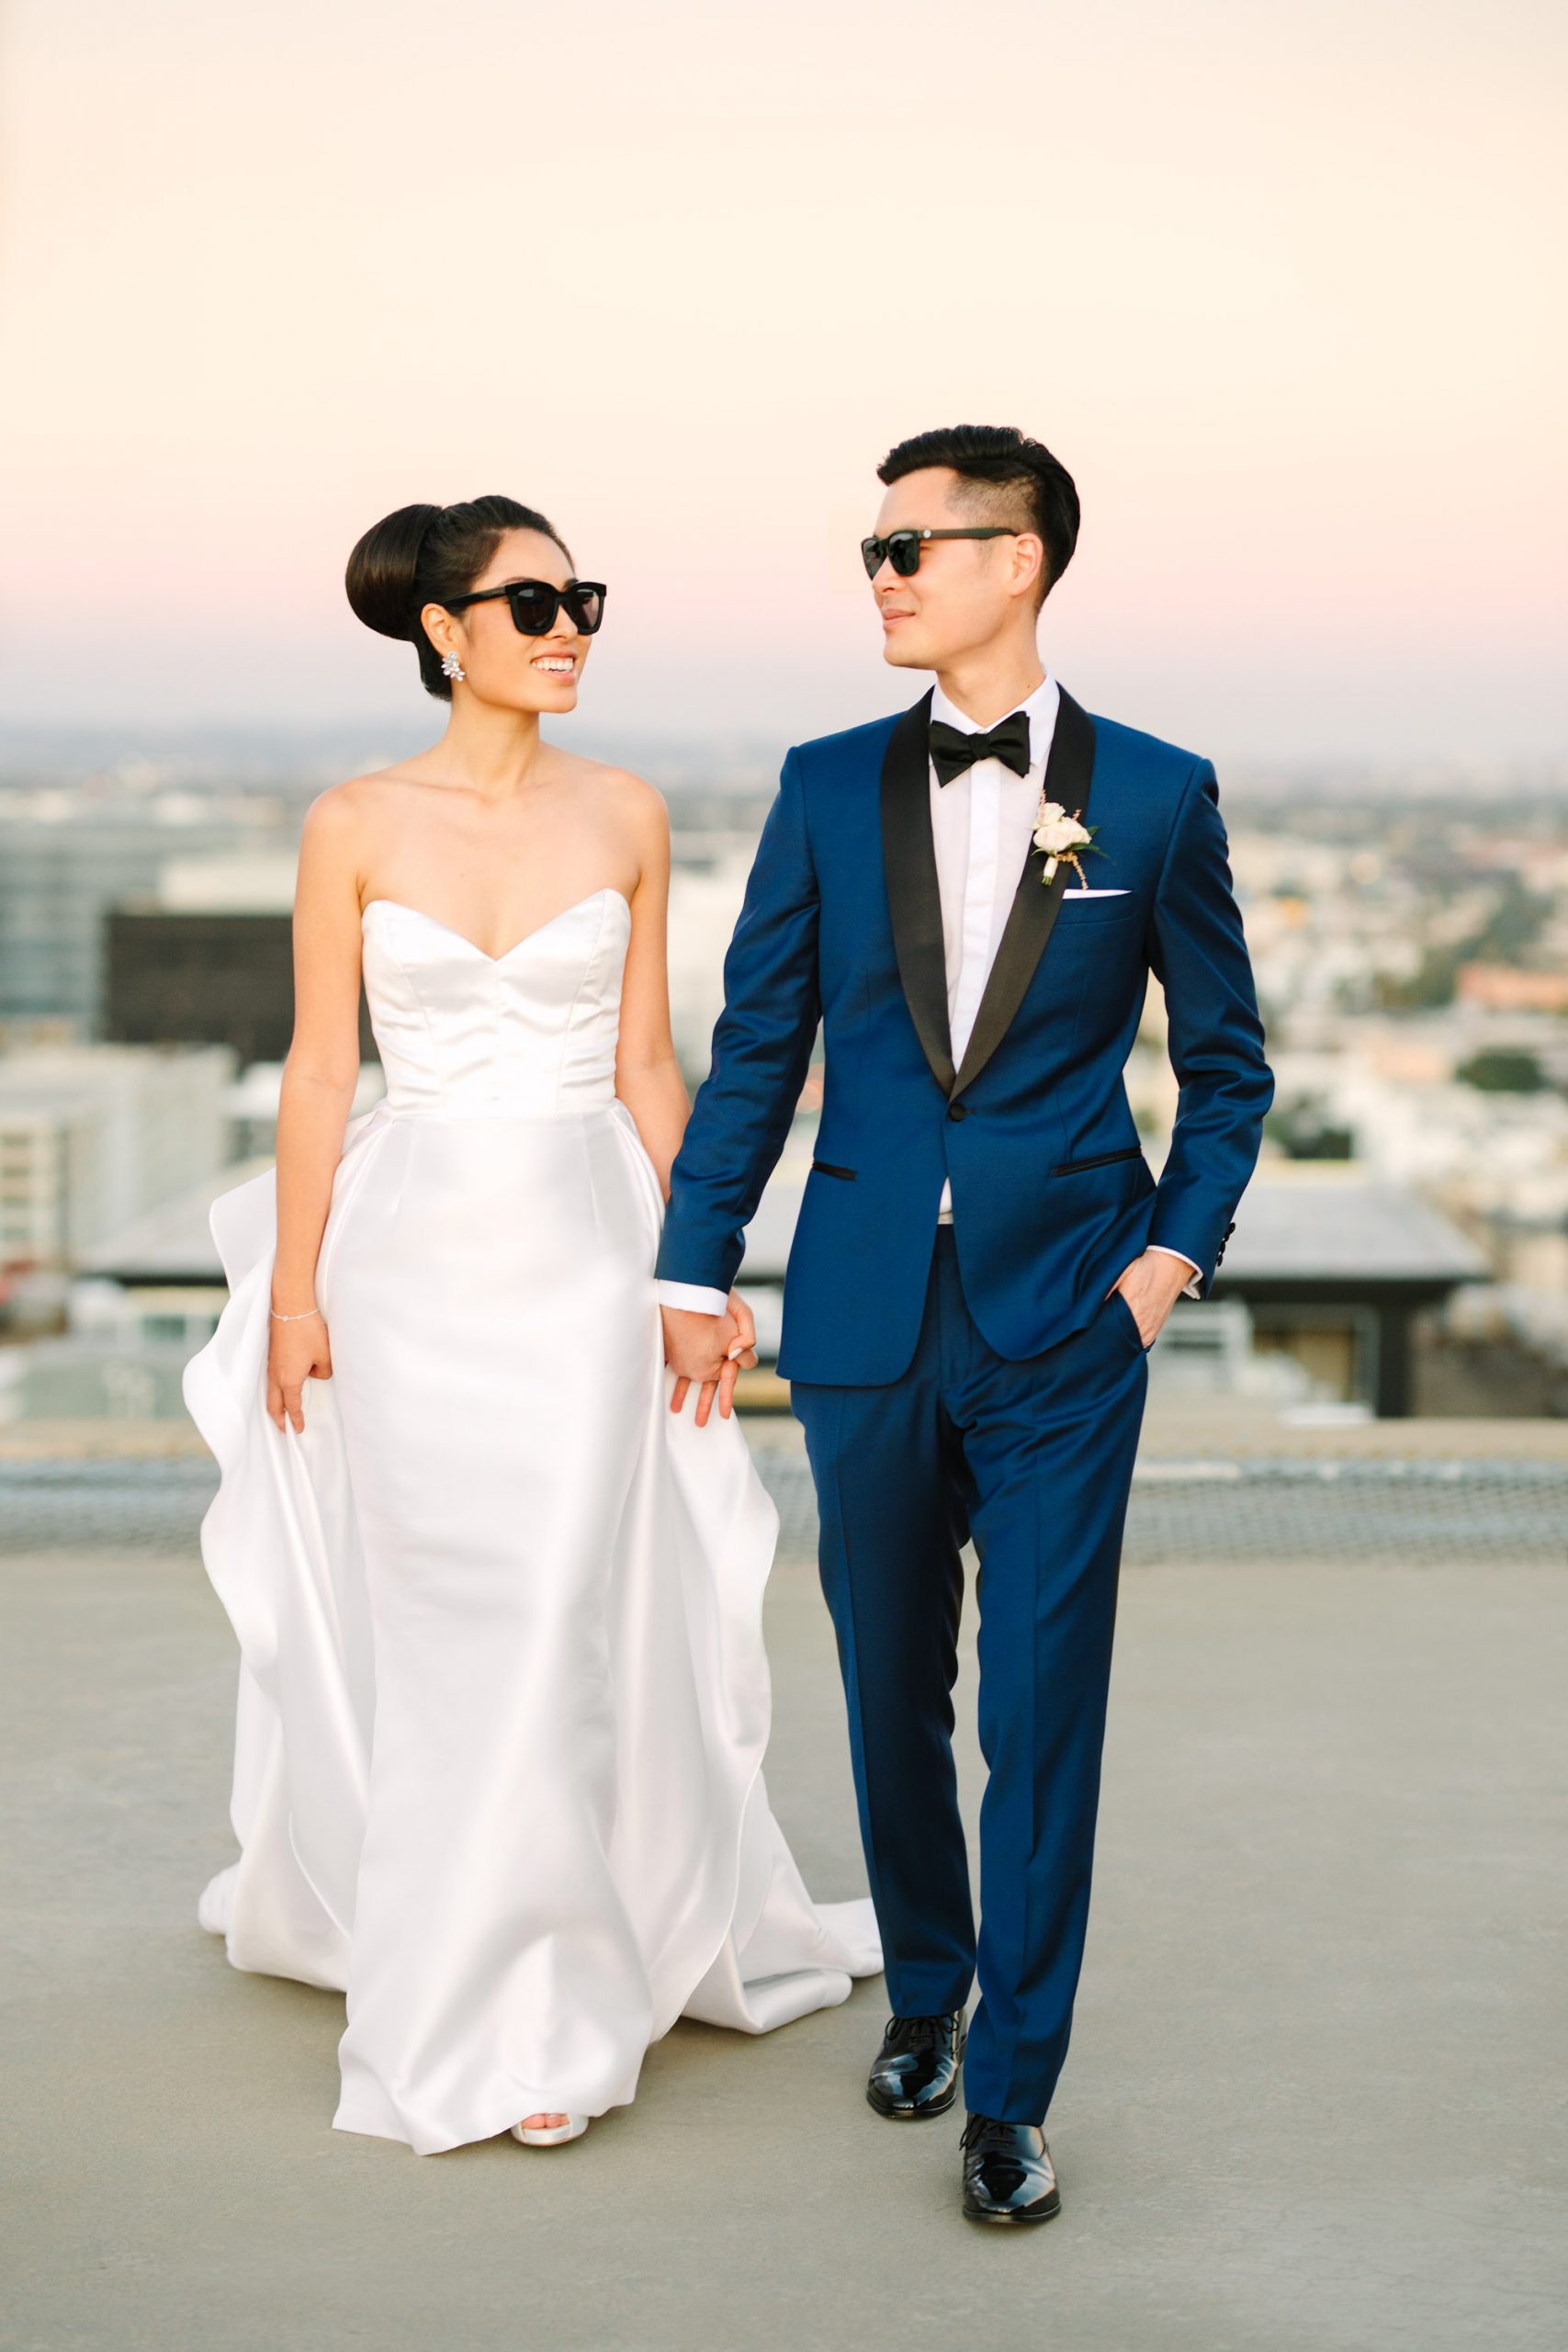 Bride and groom walking in sunglasses on Los Angeles www.marycostaweddings.com